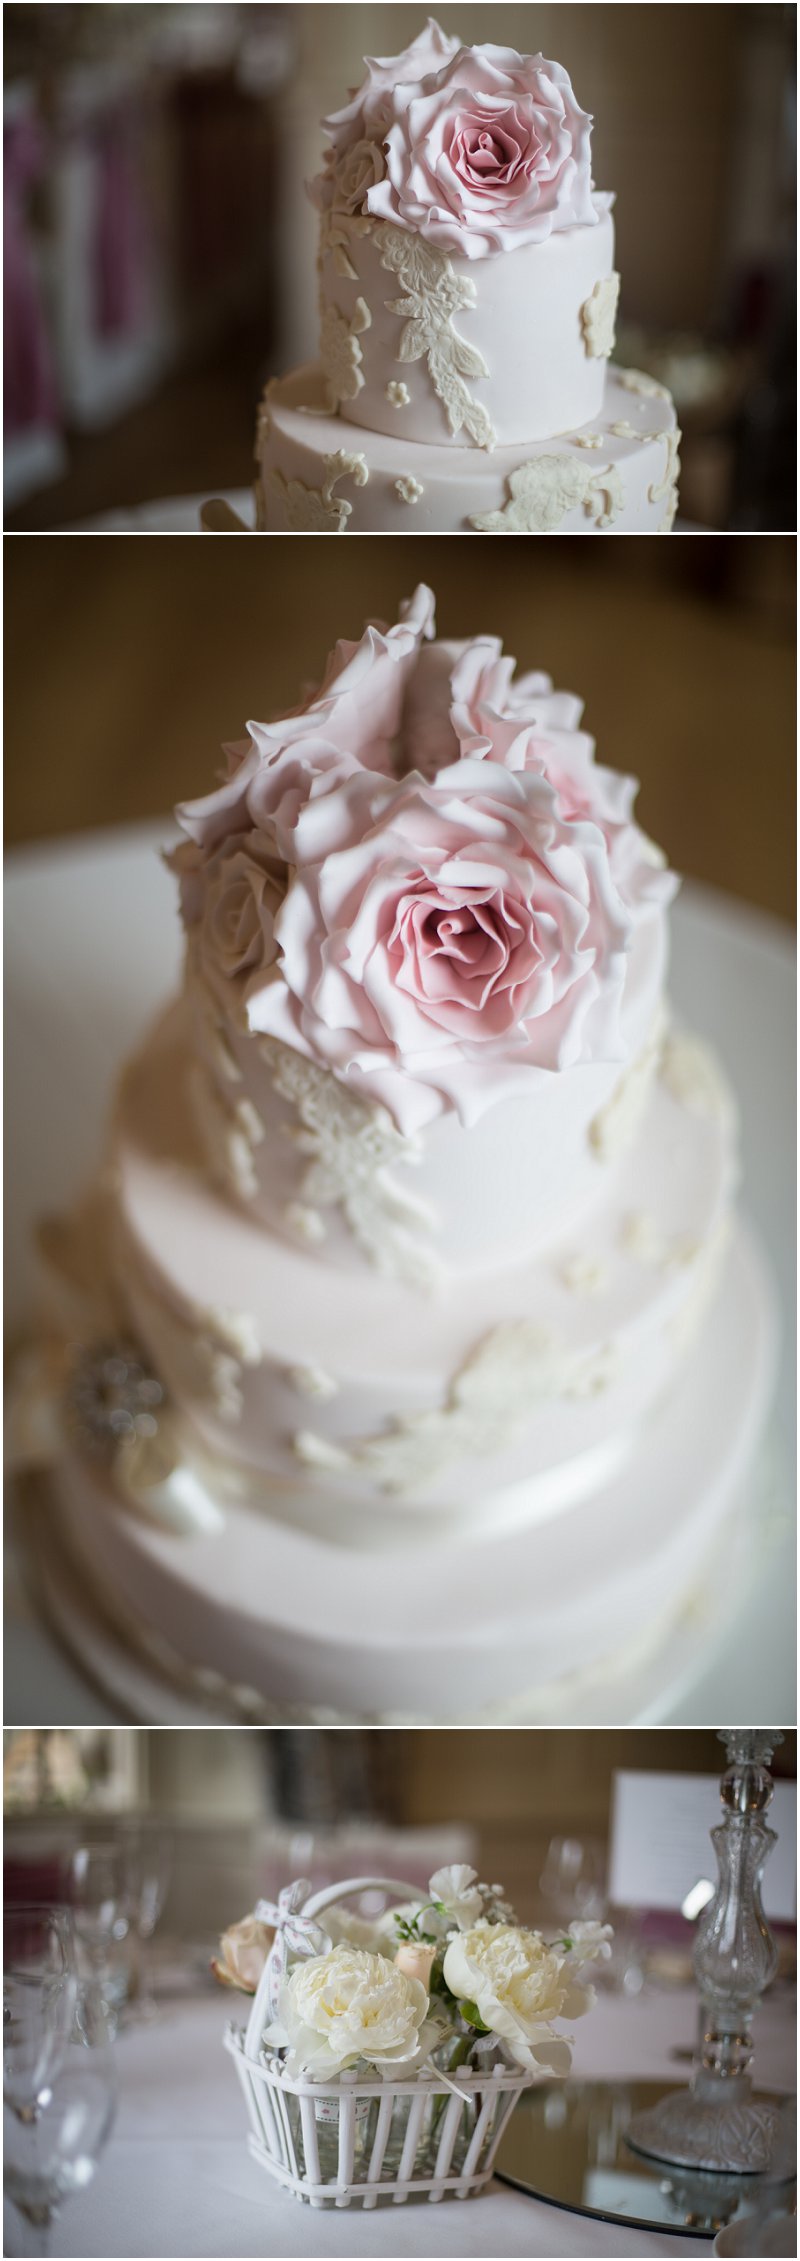 Beautiful Wedding Cake at Eaves Hall Lancashire